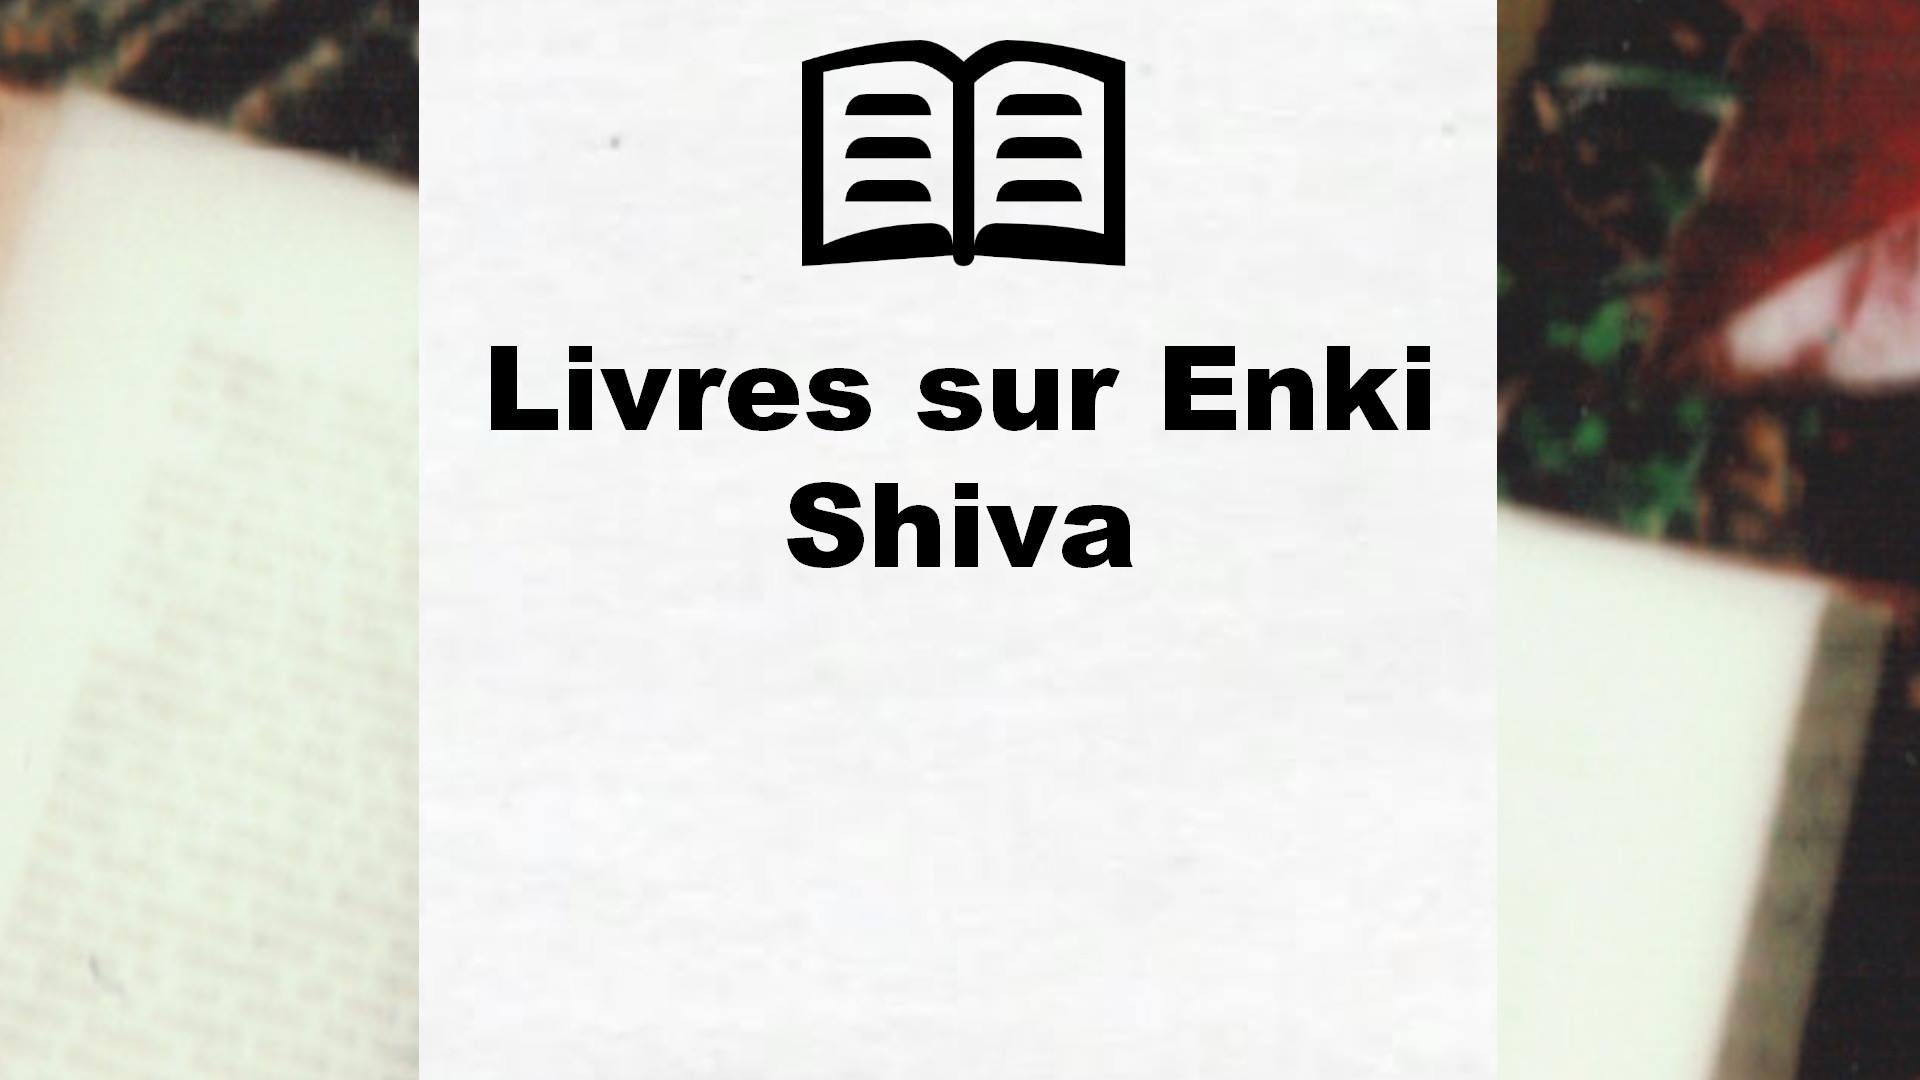 Livres sur Enki Shiva